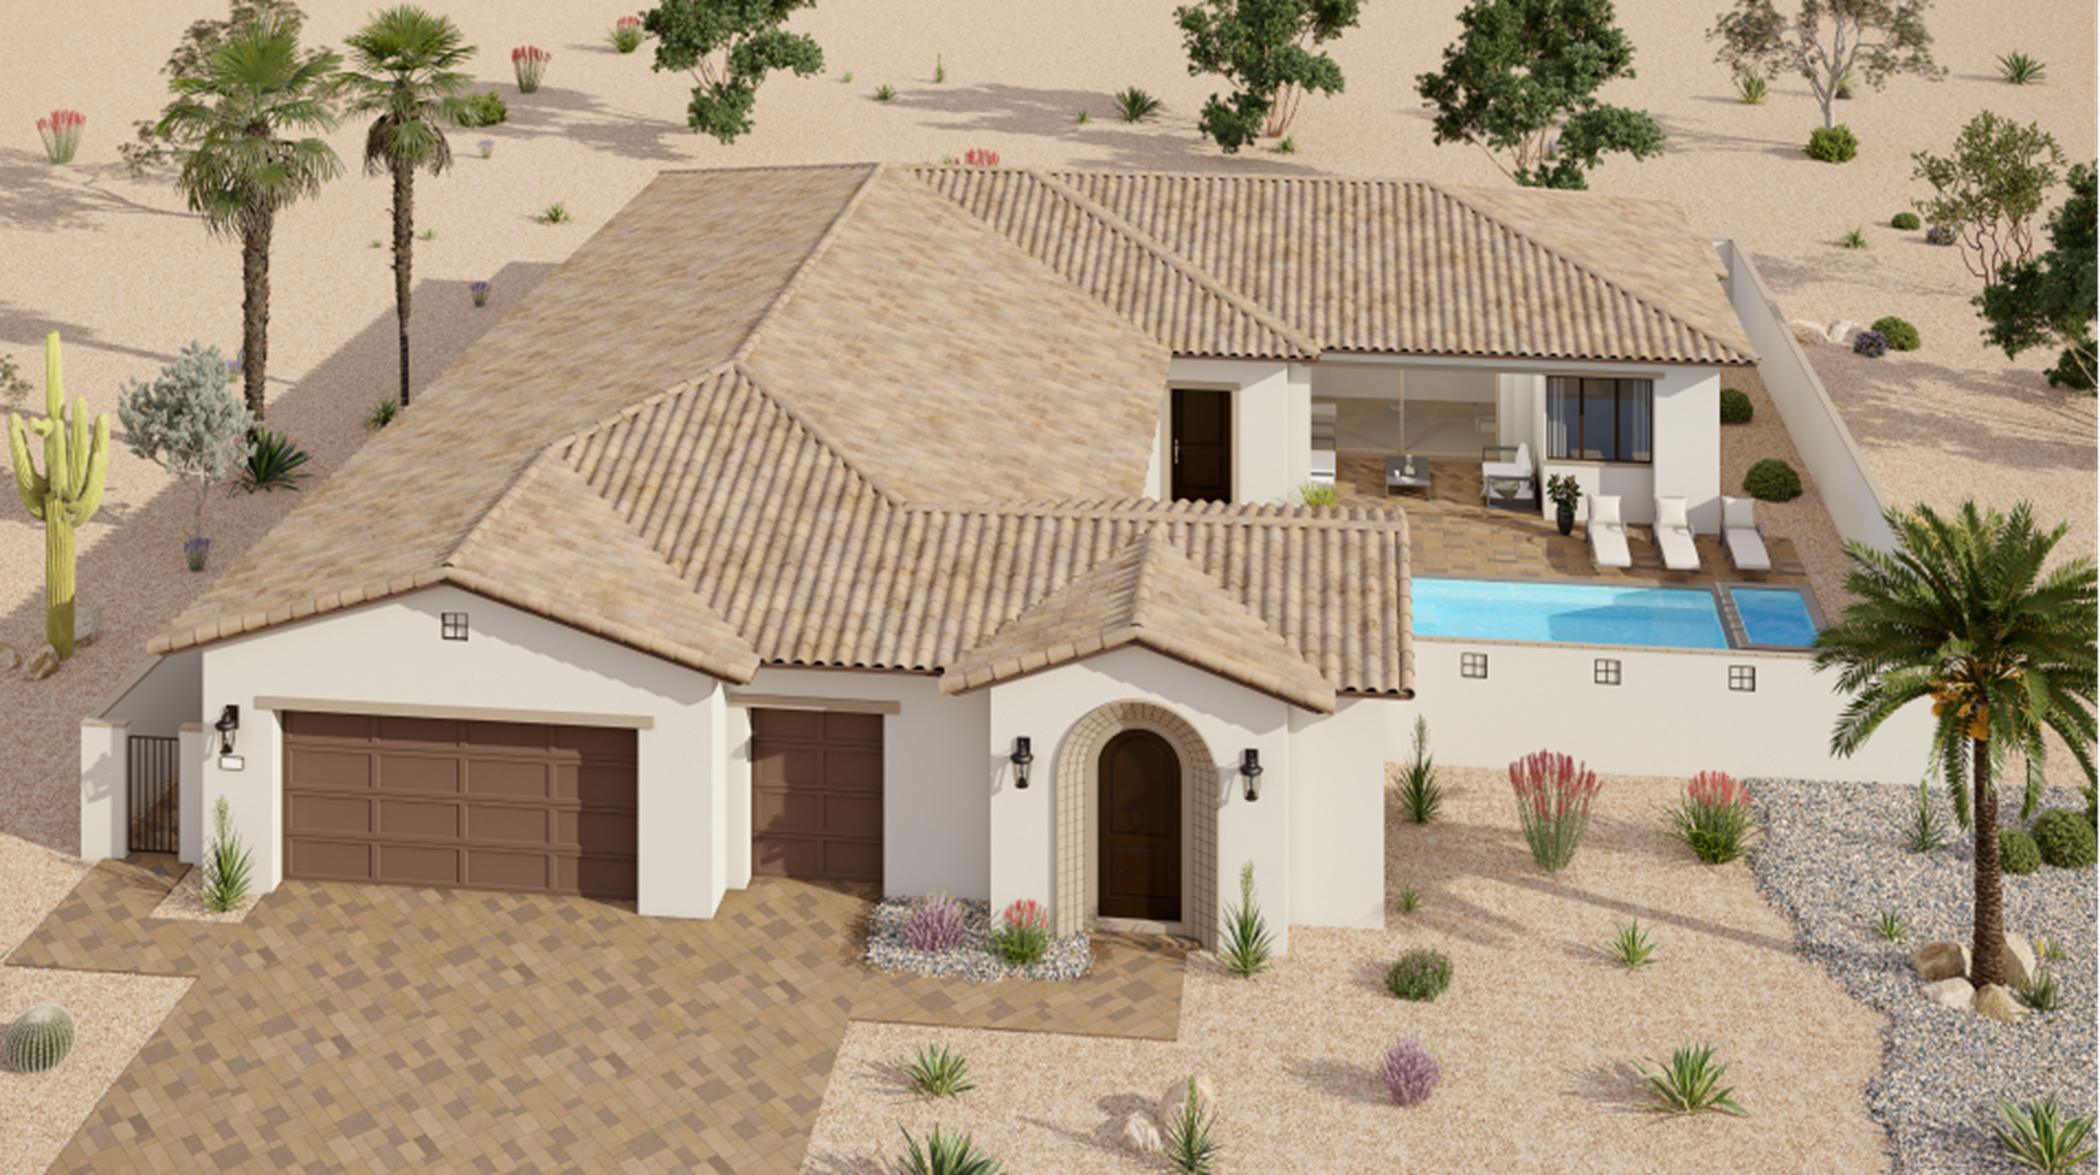 Contemporary Spanish home exterior image